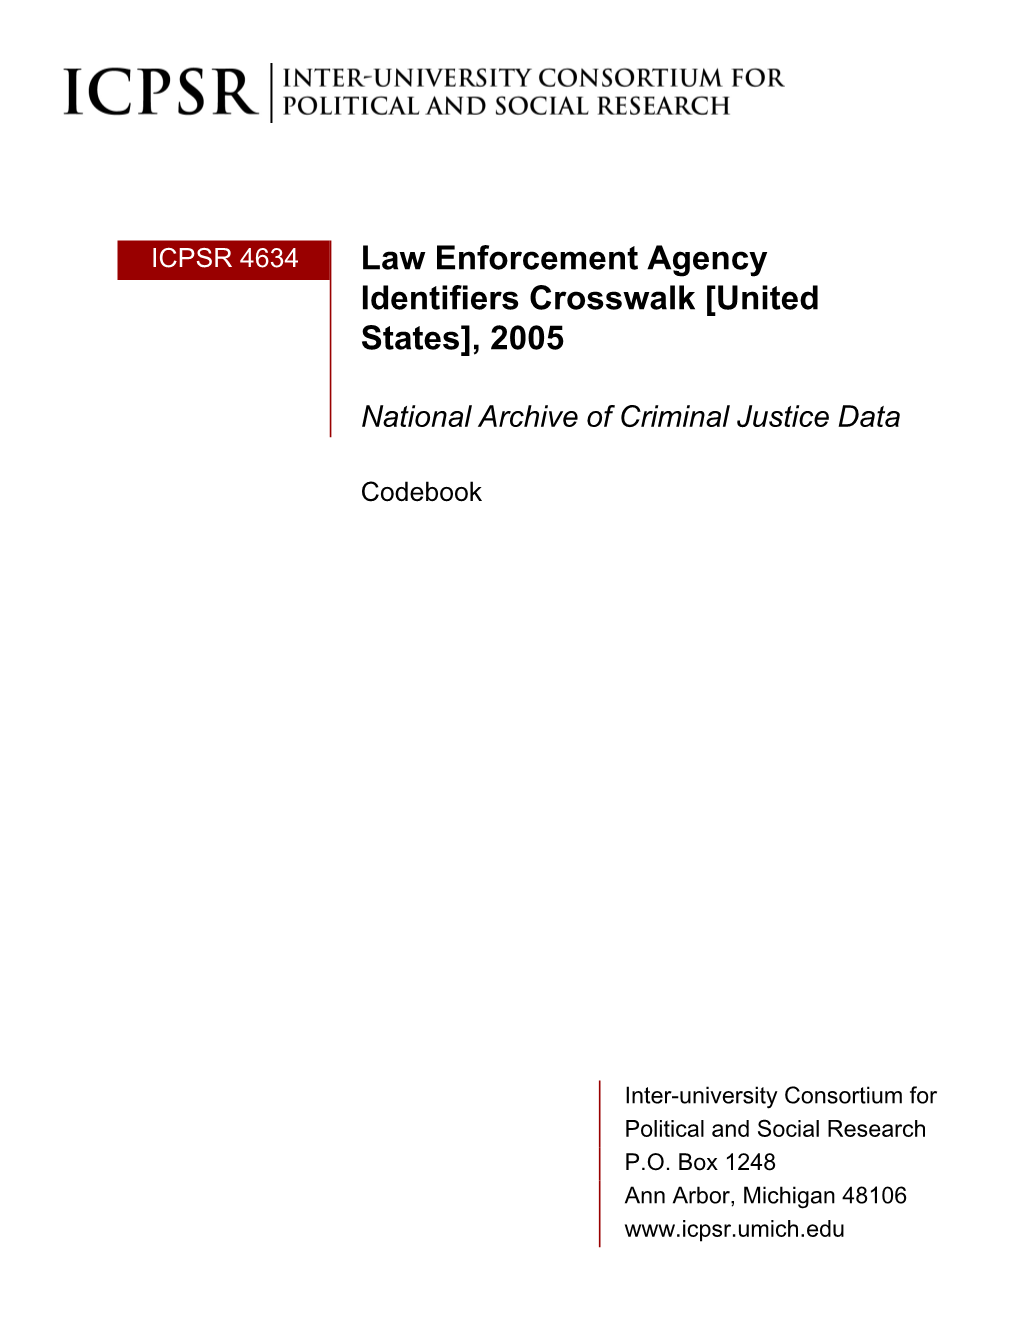 Law Enforcement Agency Identifiers Crosswalk [United States], 2005